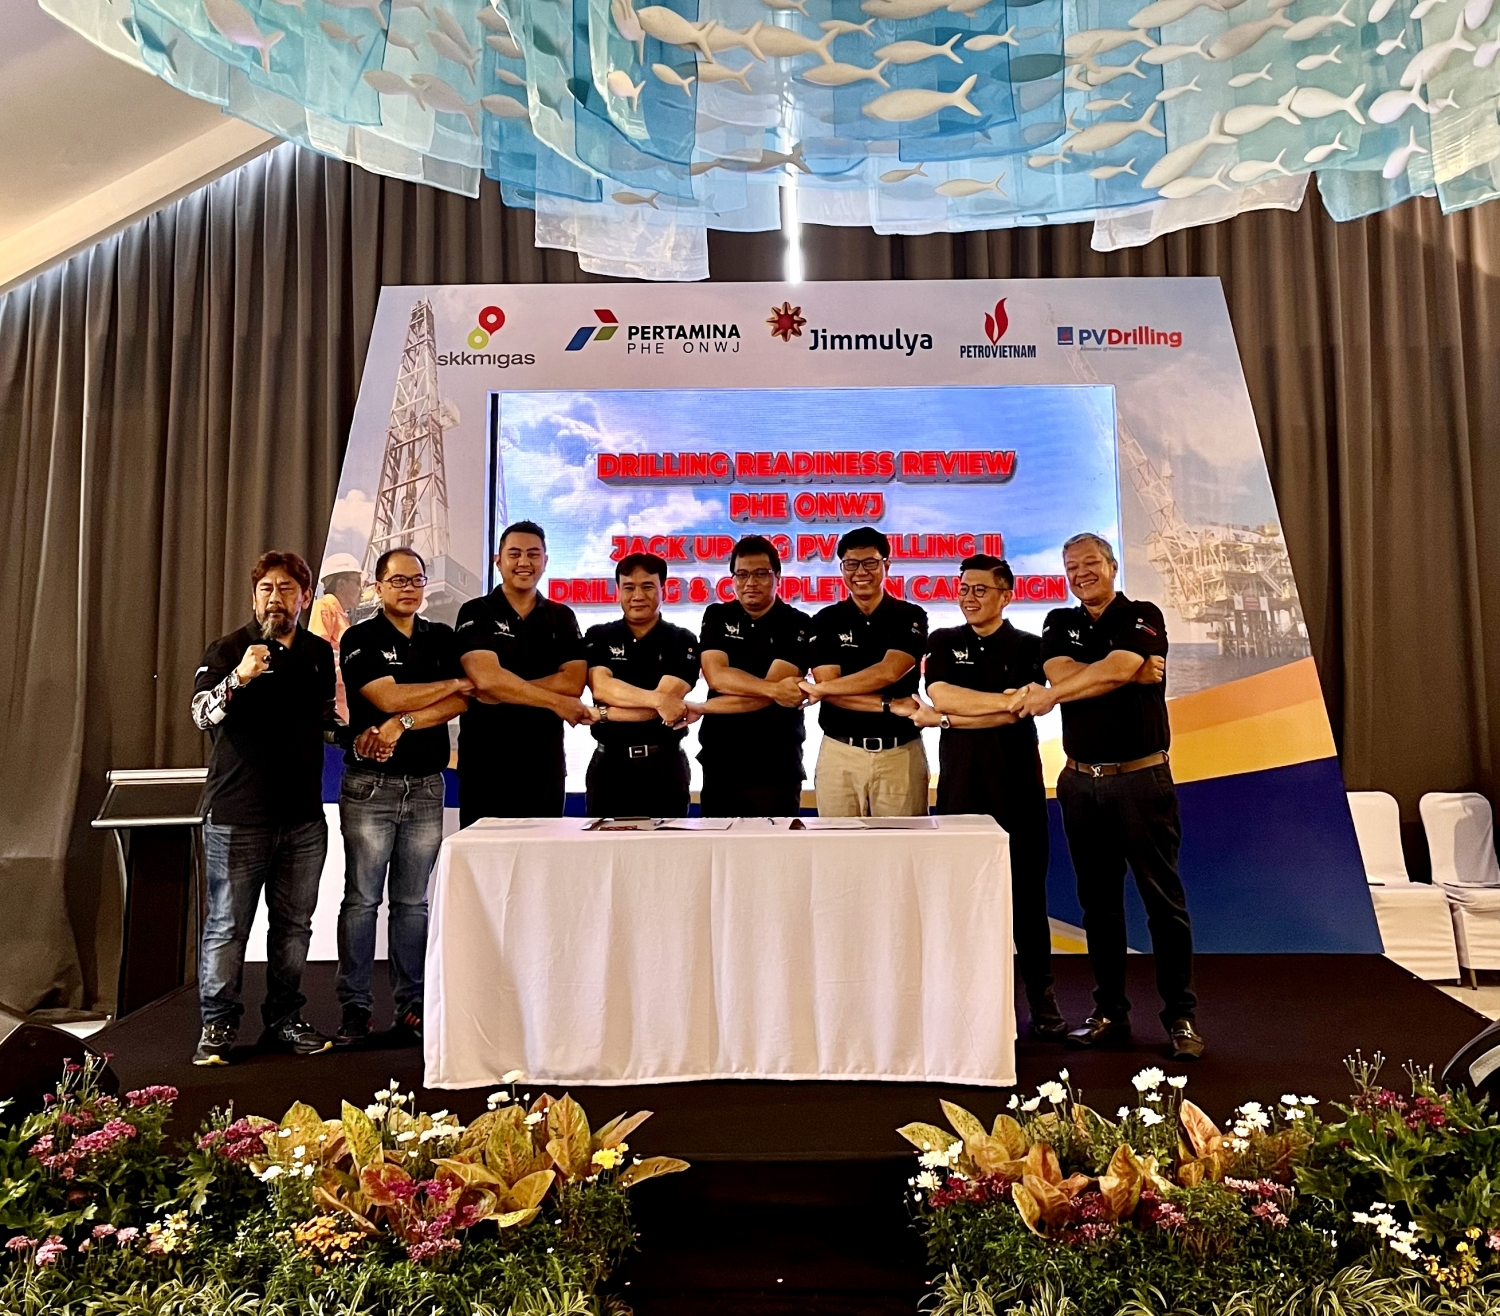 Tổng giám đốc PV Drilling Nguyễn Xuân Cường, đối tác PT Jimmulya cùng Ban lãnh đạo PHE ONWJ ký Biên bản đồng thuận cho giàn PV DRILLING II tiến hành cập vào giàn đầu giếng.